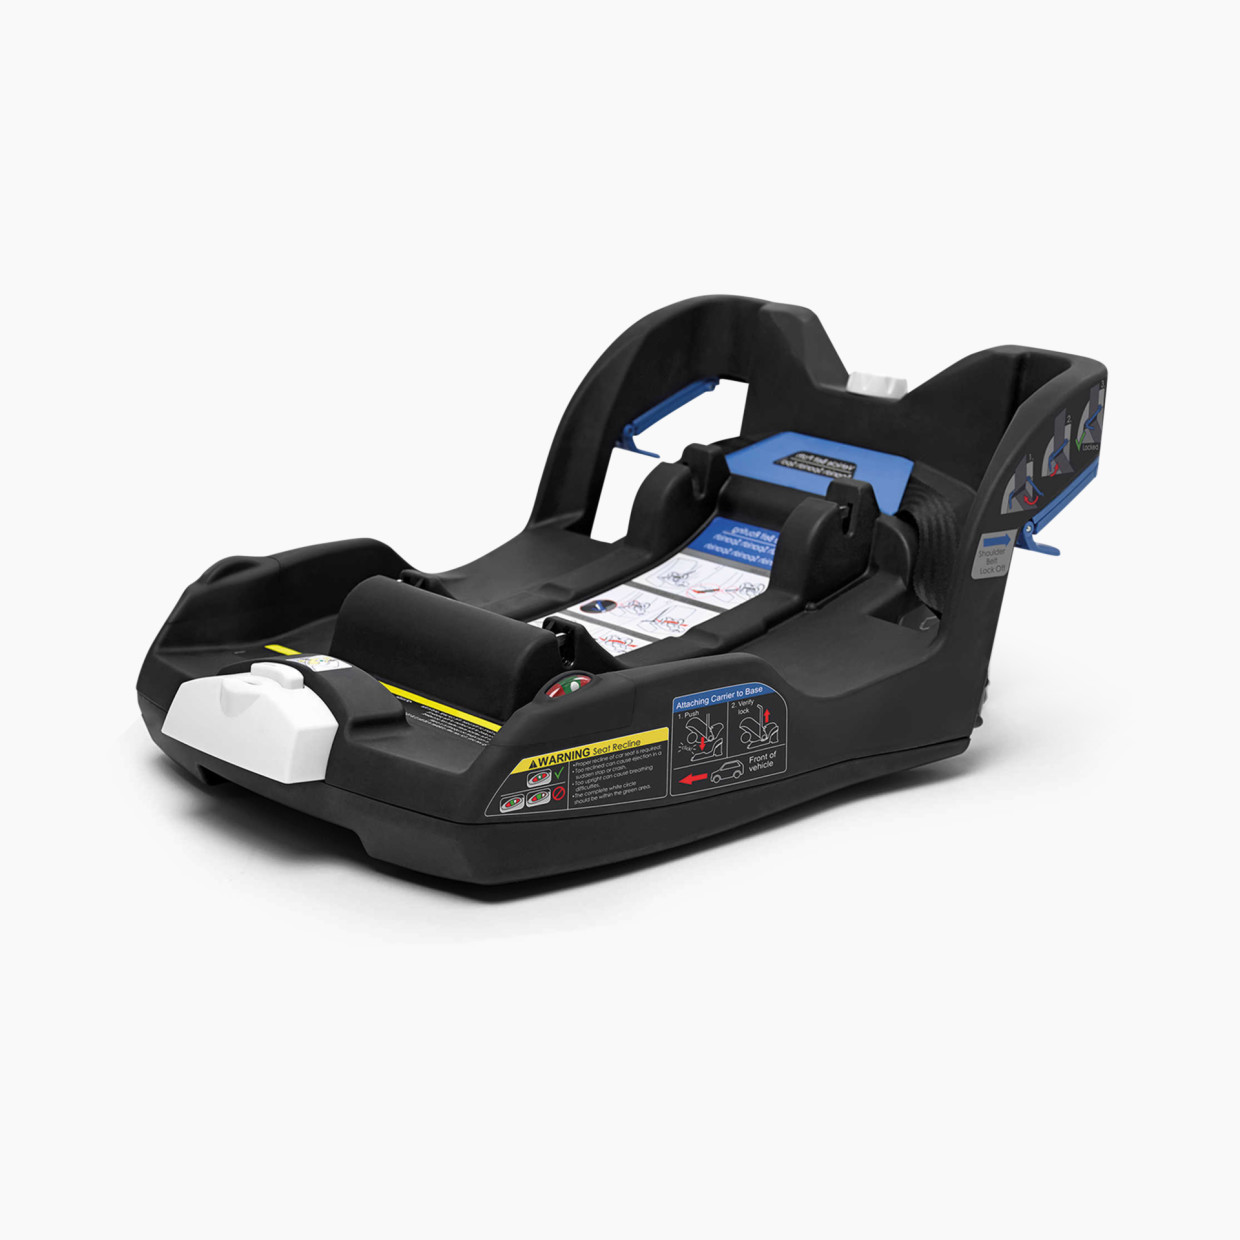 Doona Infant Car Seat Base for Infant Car Seat & Stroller.